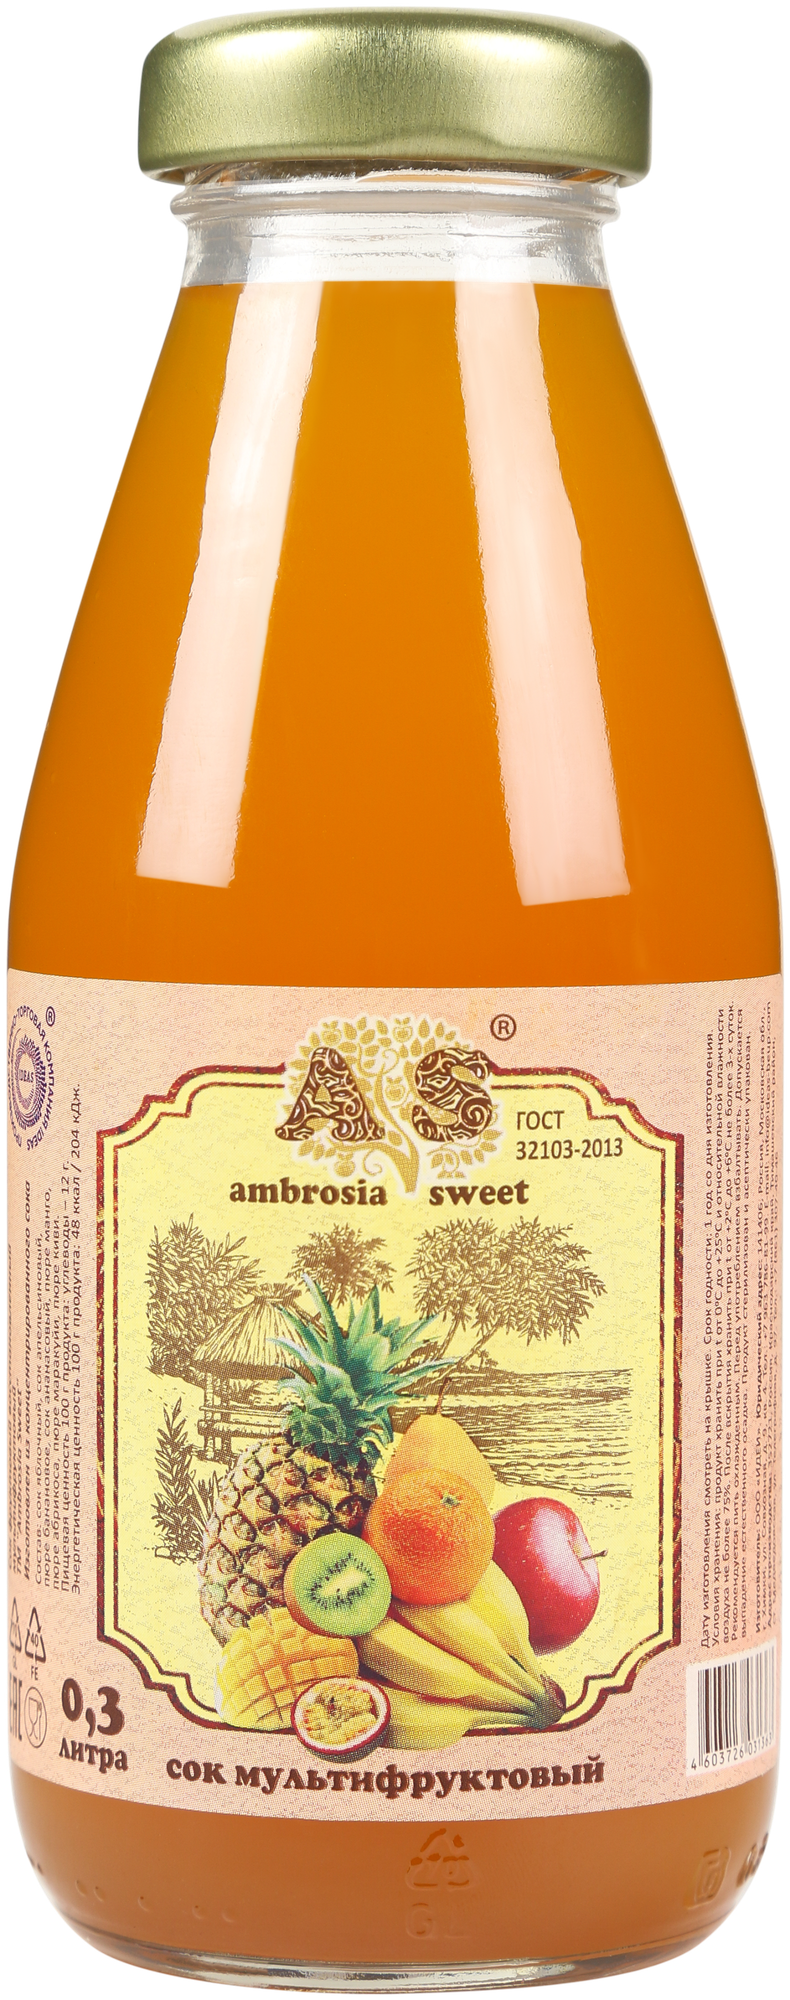 Сок мультифруктовый Ambrosia Sweet 0,3л